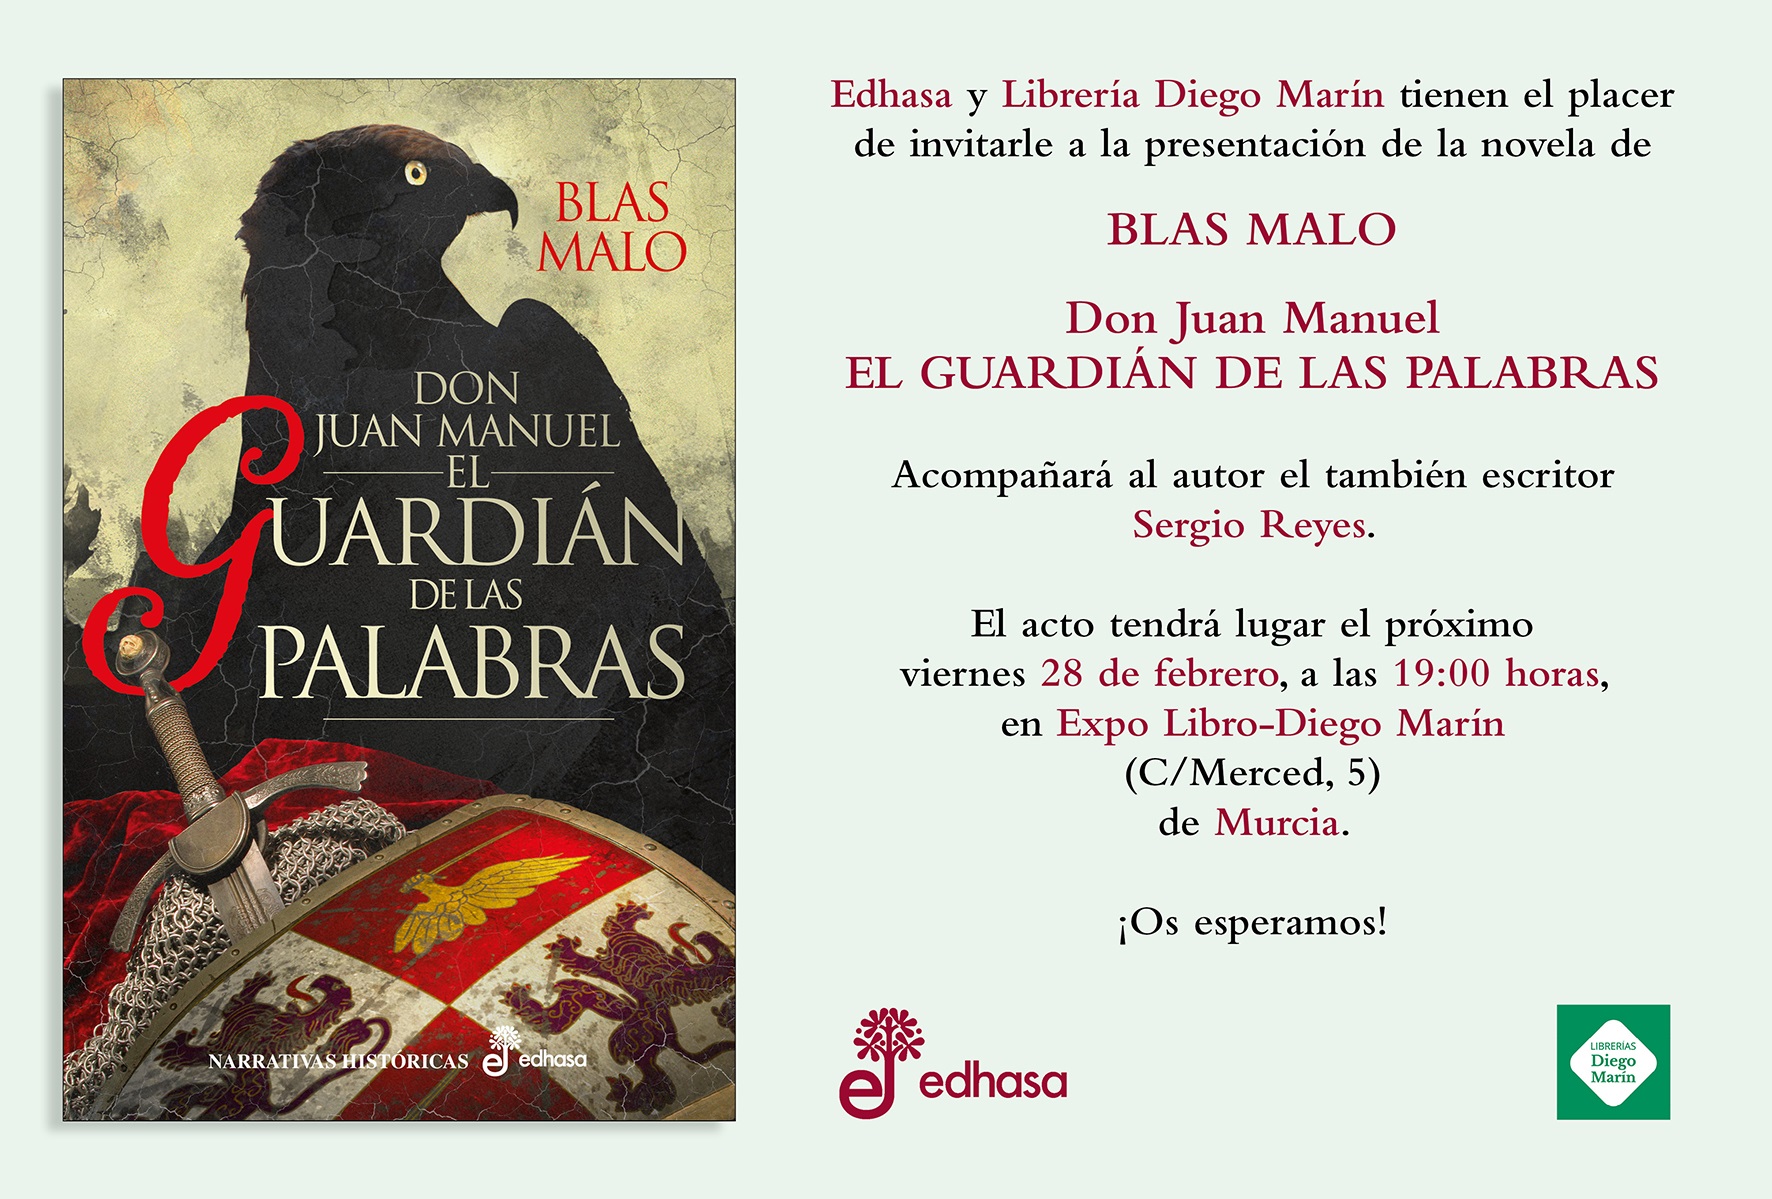 Presentando a un autor: Blas Malo y Don Juan Manuel - El guardián de las palabras